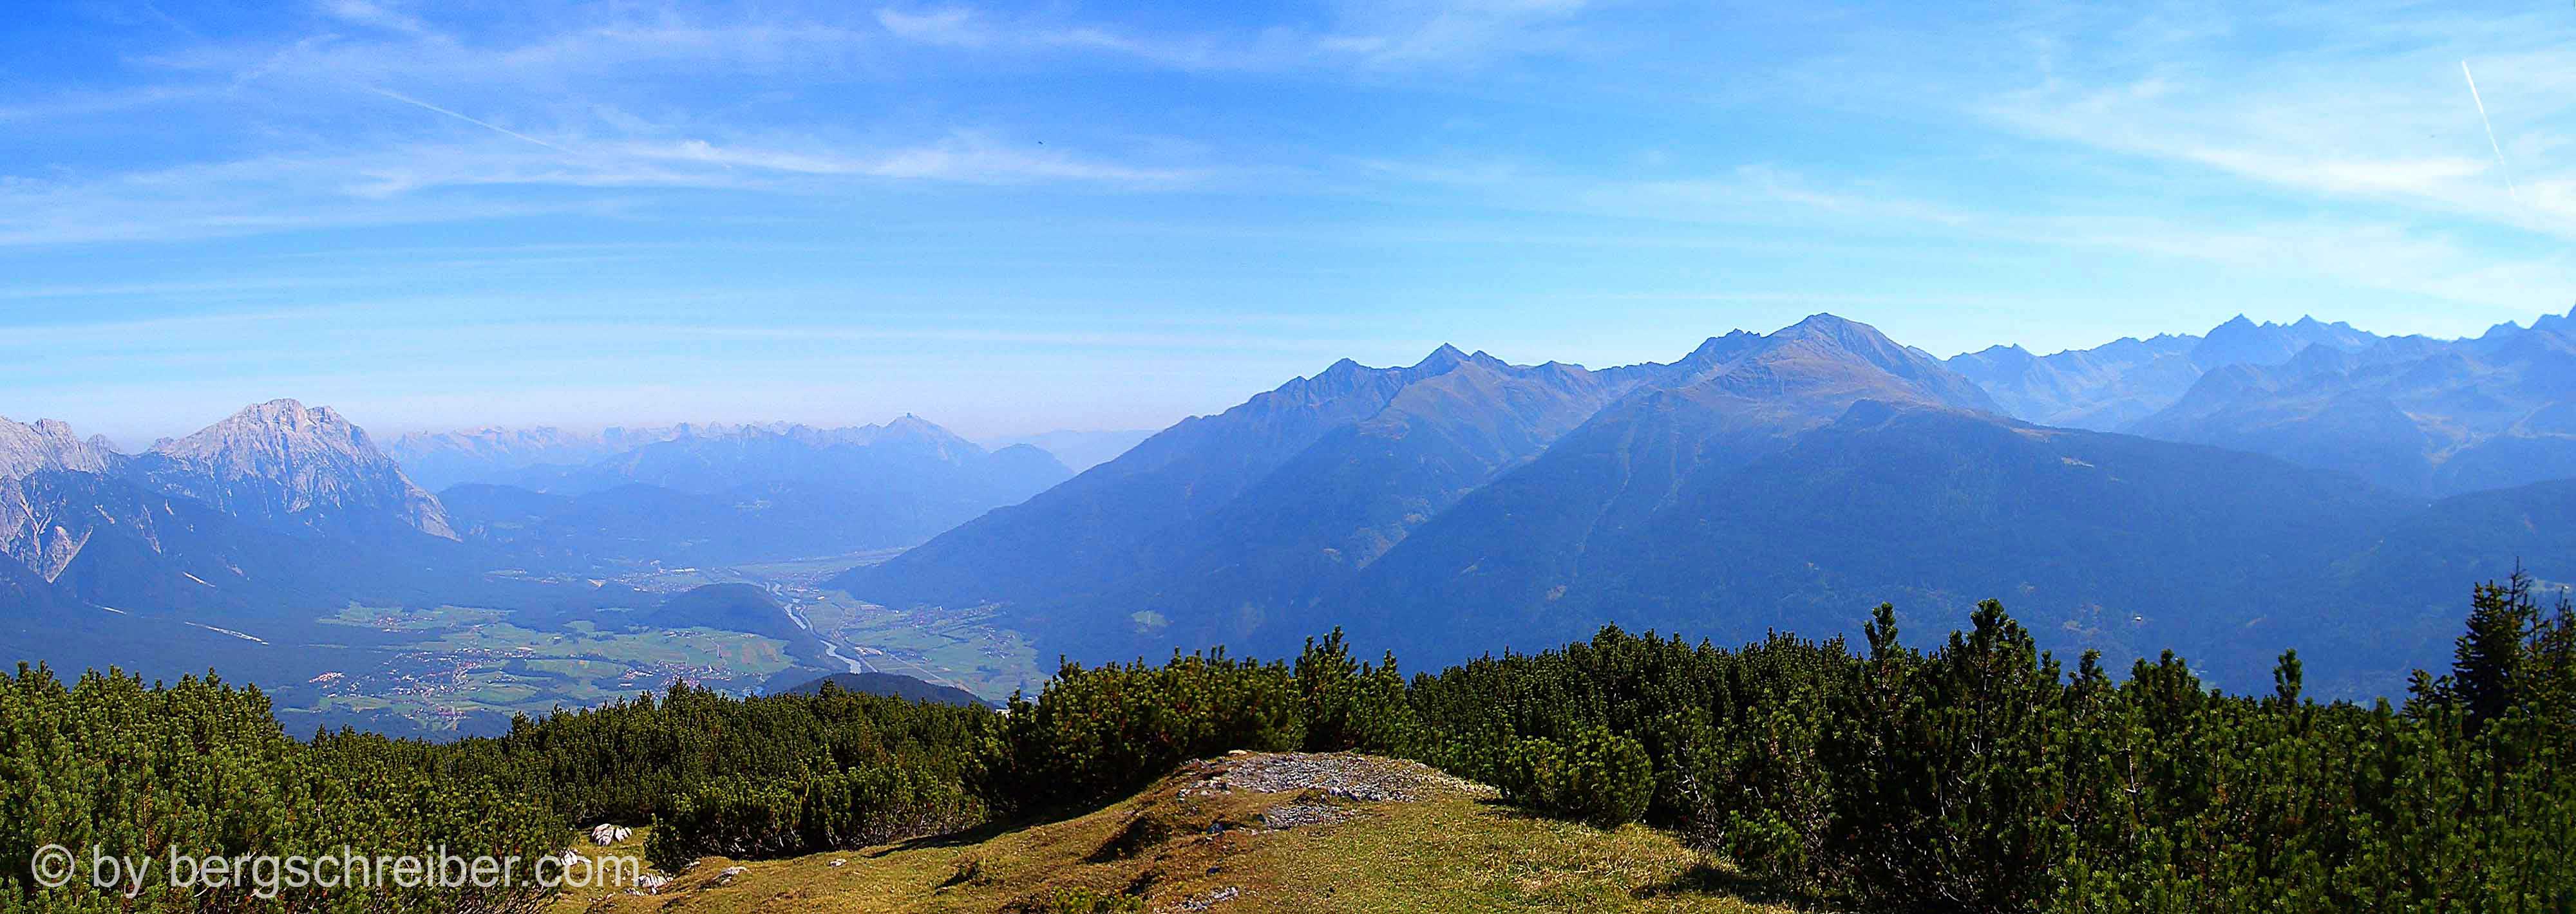 Blick vom Simmering ins Inntal, links die Mieminger Kette, am Horizont das Karwendel, rechts die Stubaier Alpen. 